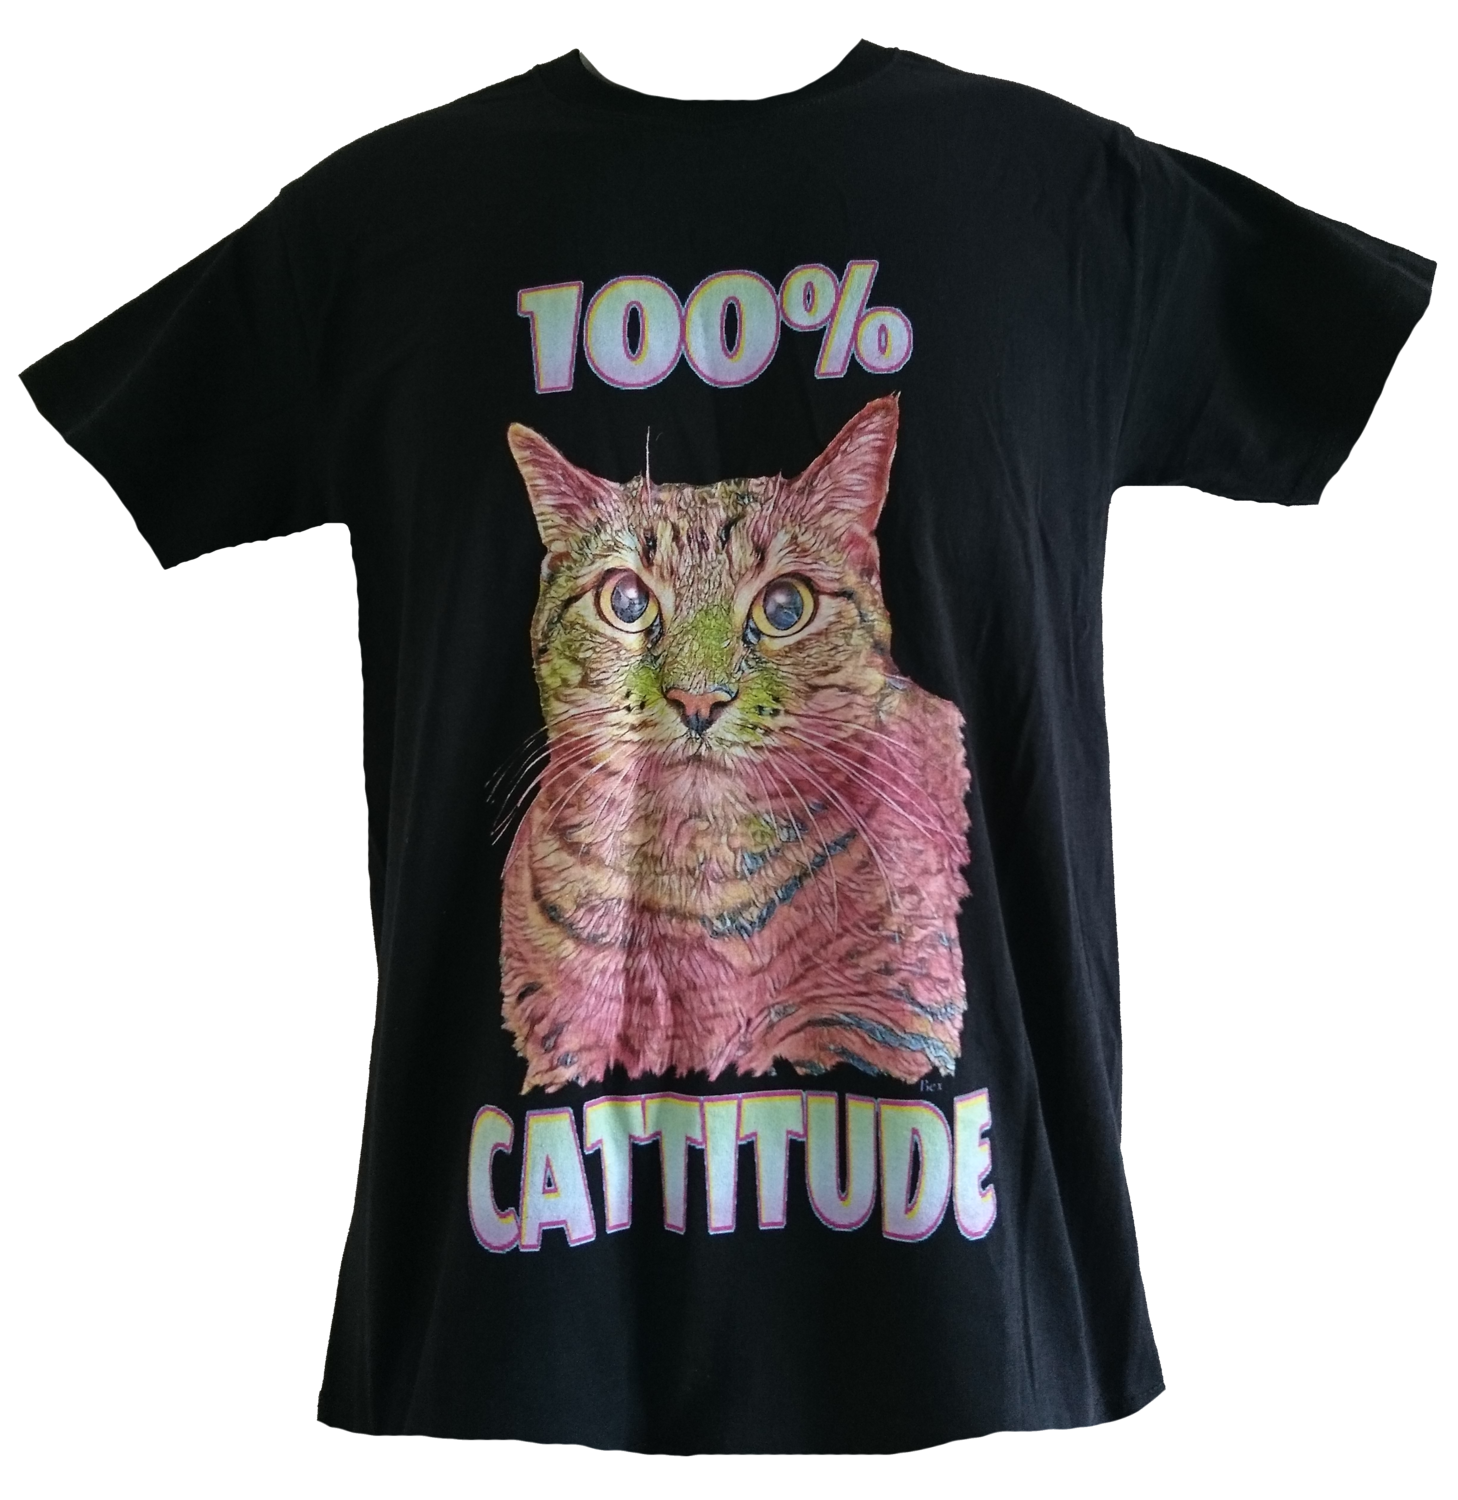 100% Cattitude